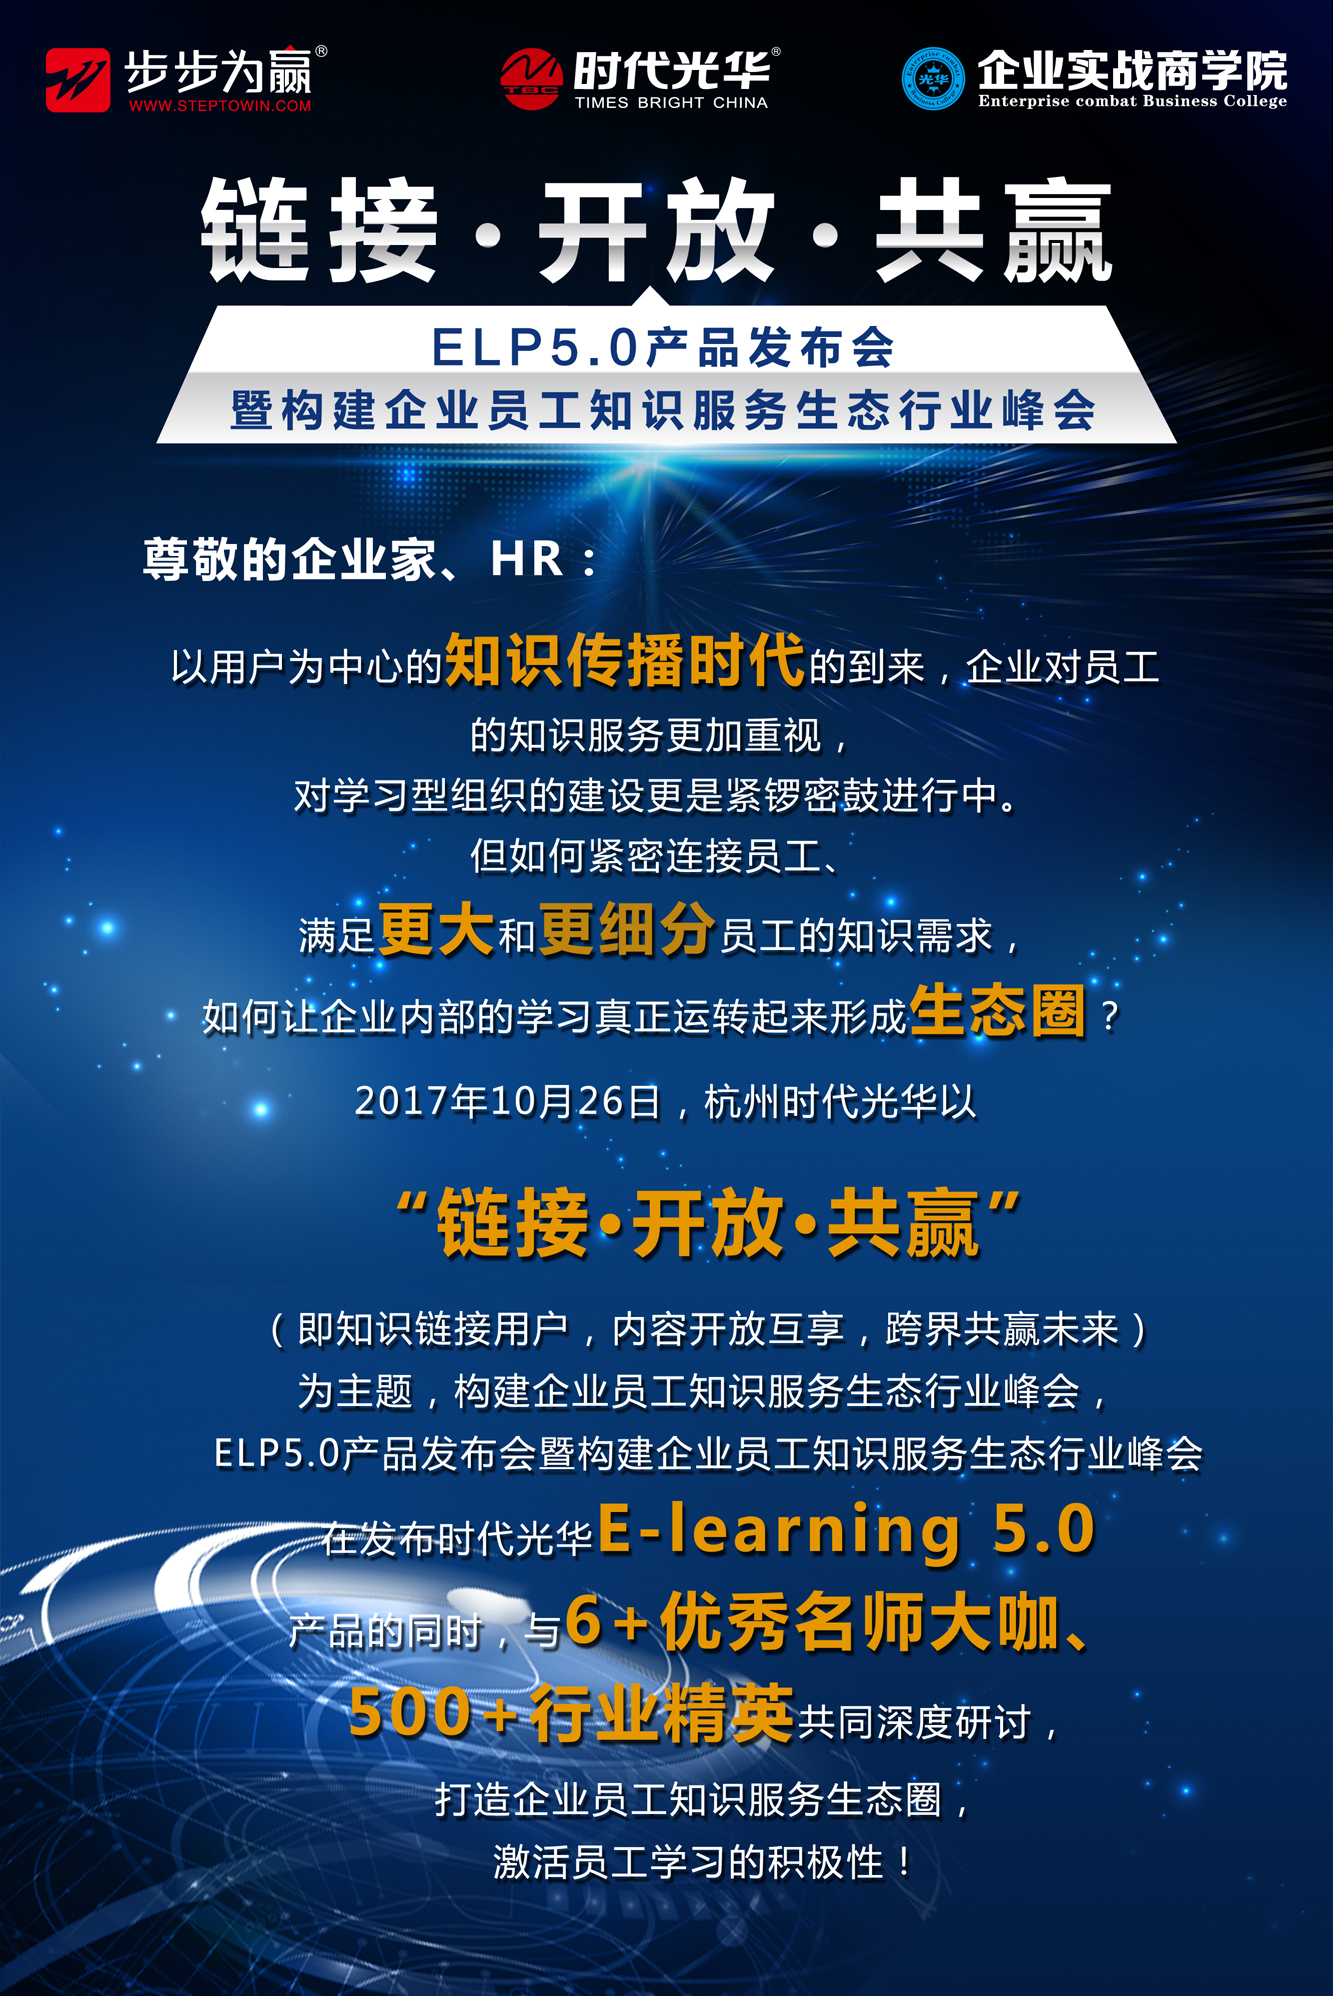 时代光华,行业峰会,e-learning